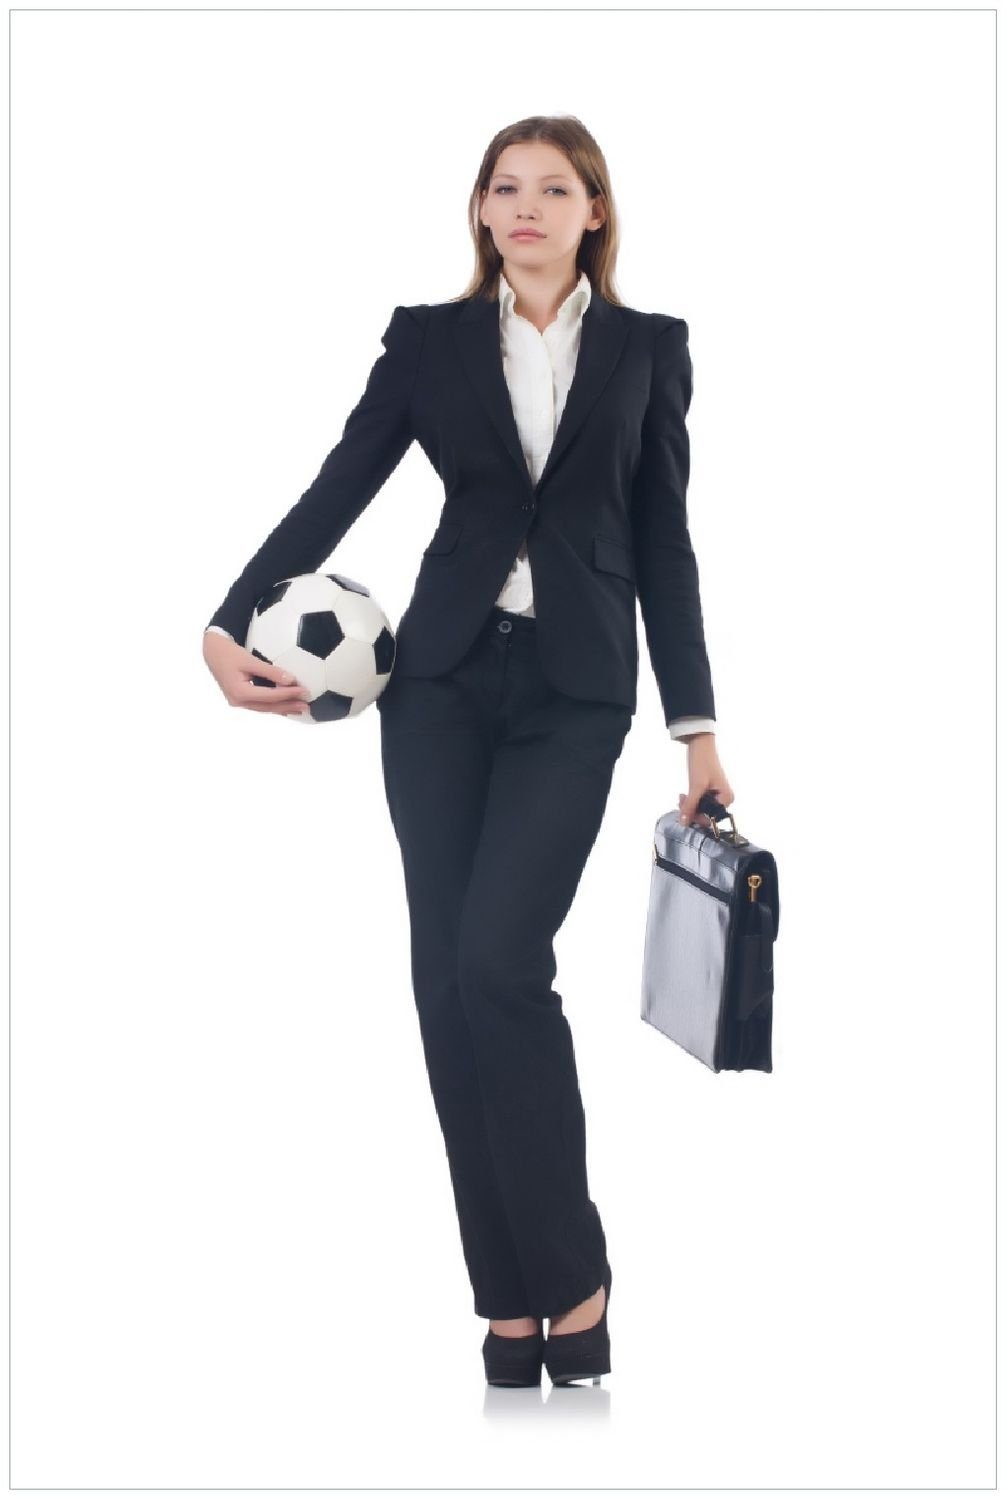 Wallario Poster, Fußball Business - Geschäftsfrau mit Ball und Aktentasche, in verschiedenen Ausführungen